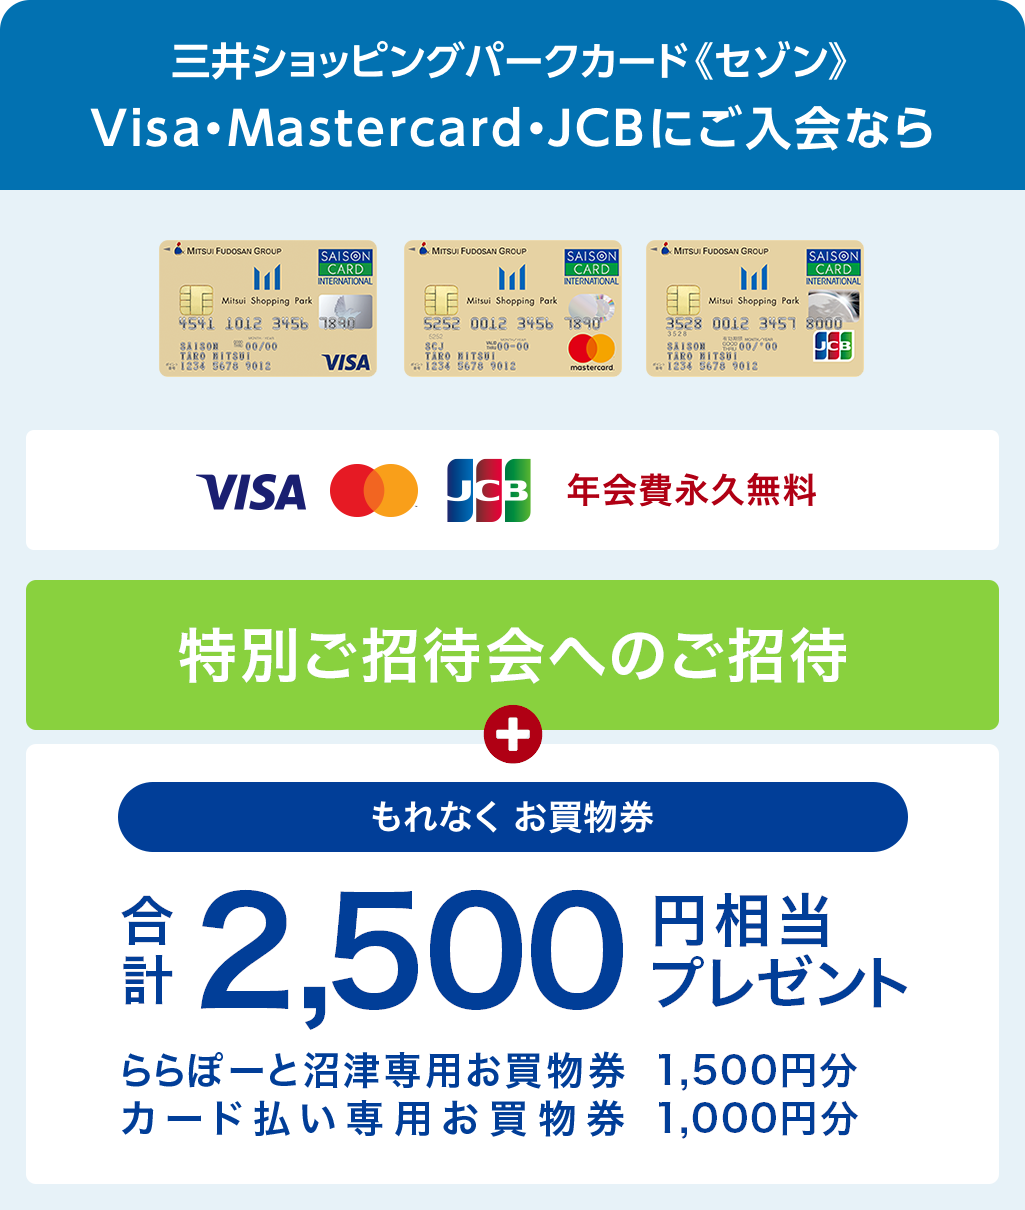 三井ショッピングパークカード《セゾン》Visa・Mastercard・JCBにご入会なら